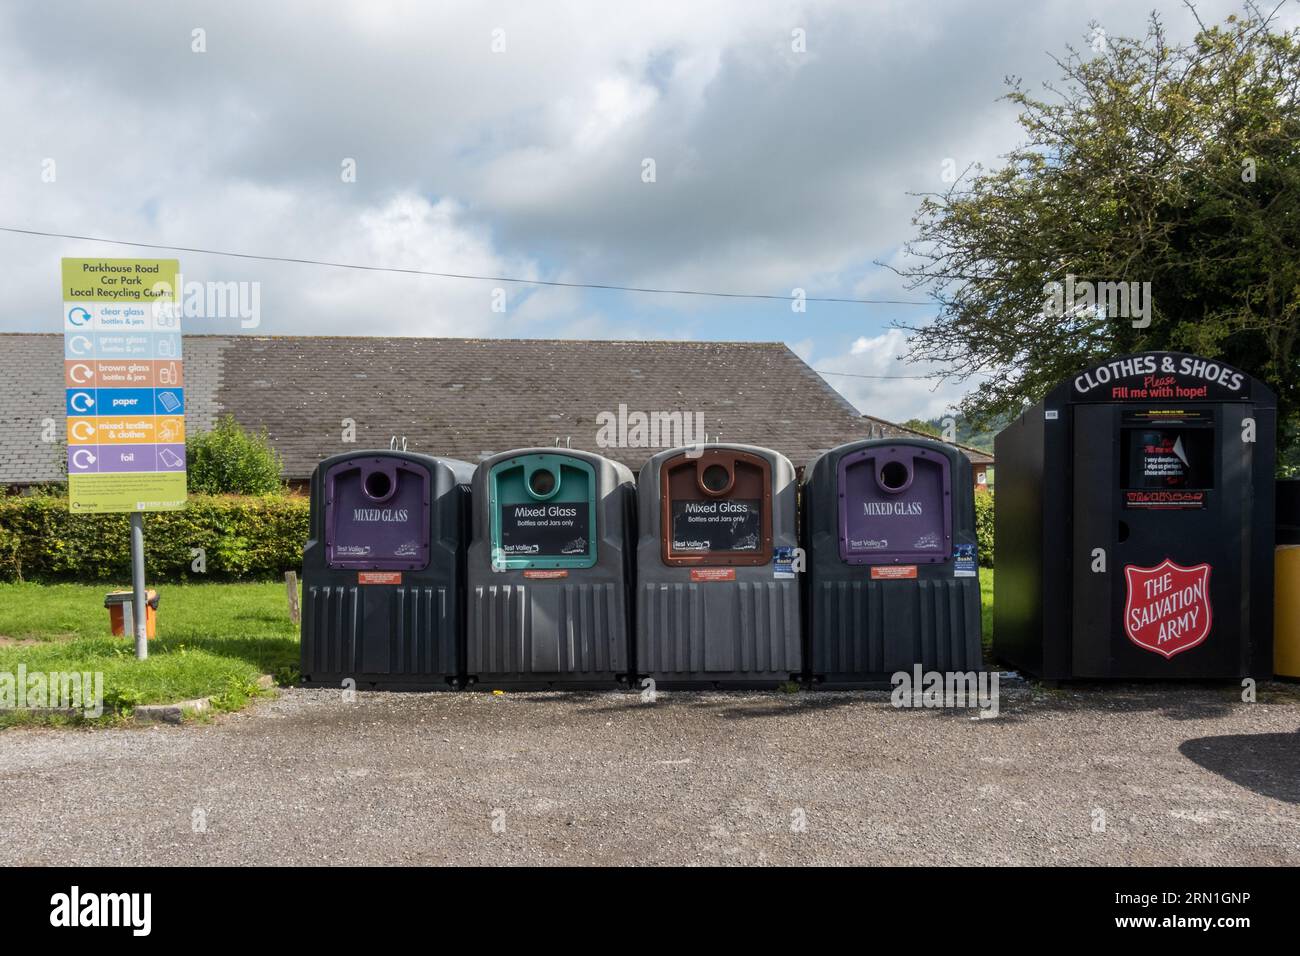 Lokale Recyclingstelle in einem Dorfparkplatz mit Abfalleimern für verschiedene Glasfarben und einem Abfalleimer der Heilsarmee für Textilschuhe, England, Großbritannien Stockfoto